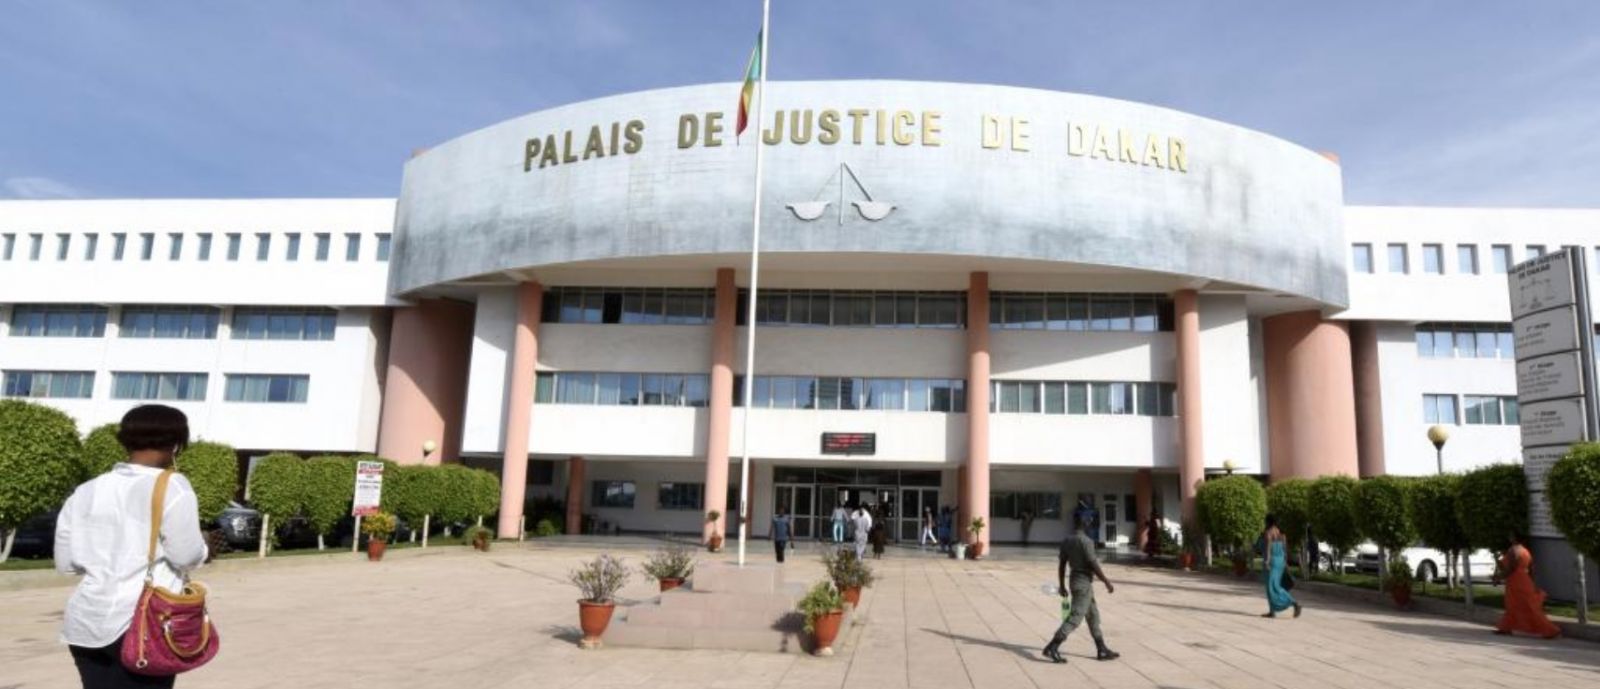 Palais-justice-dakar-